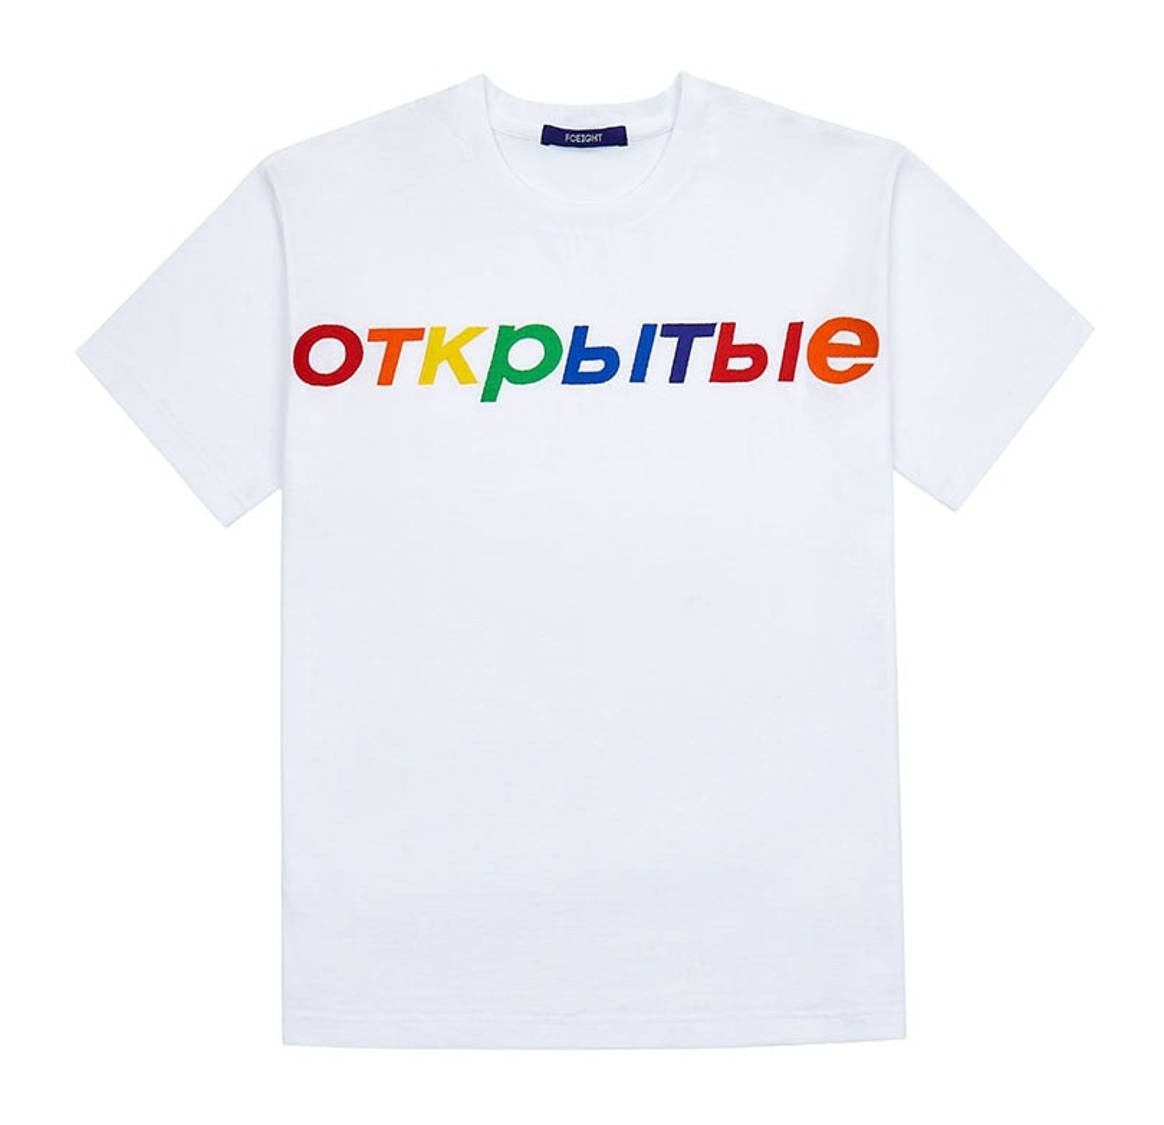 Fceight создал свитшоты и футболки для ЛГБТ-медиа «Открытые»